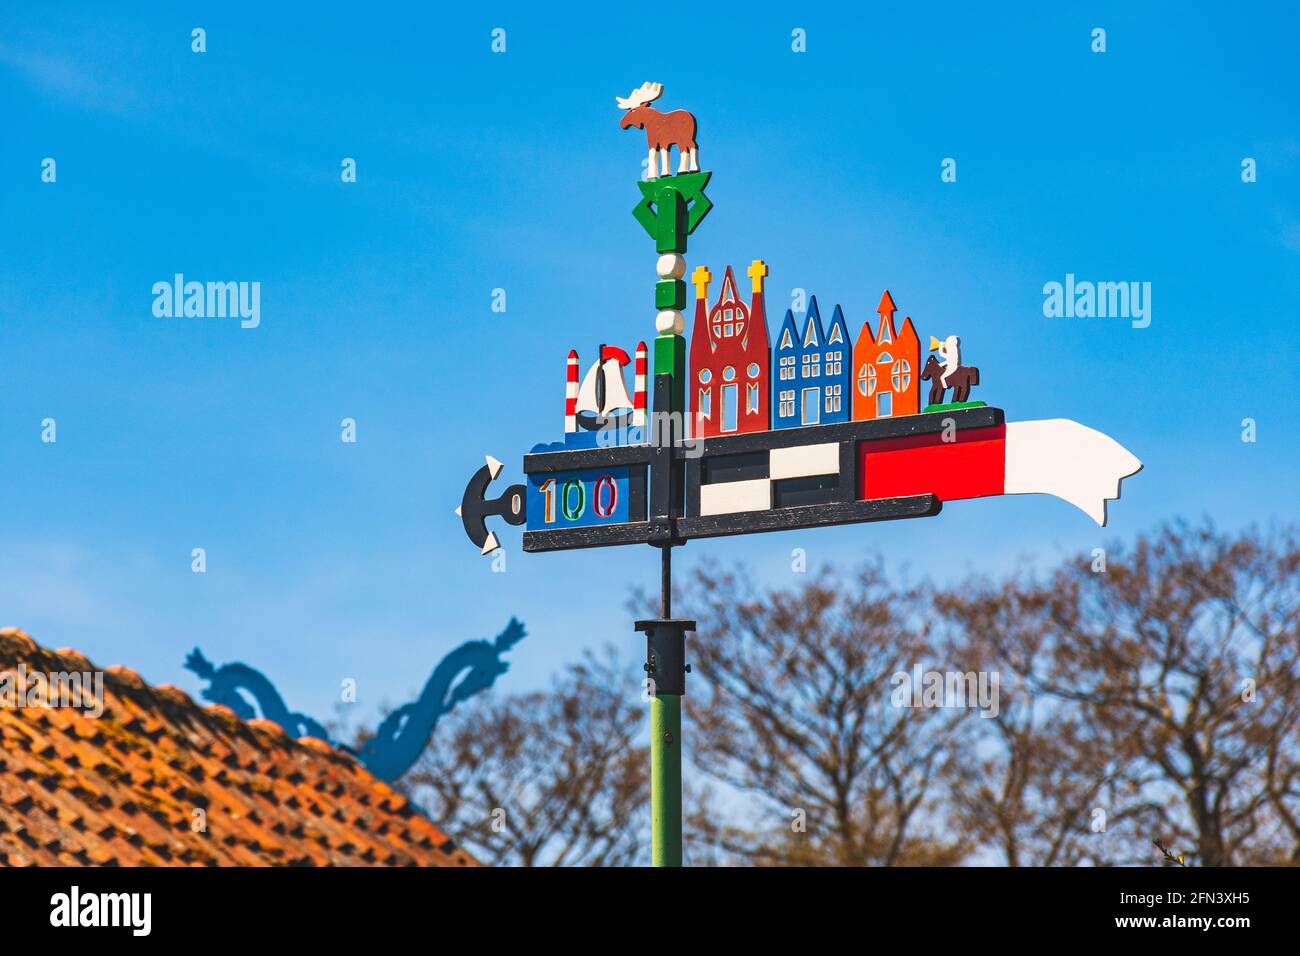 Schöner, farbenfroher Wetterhahn, der in der Kurischen Nehrung im Fischerdorf Nida, Litauen, Europa, mit blauem Himmel und einem Dach mit Pferdeköpfen winkt Stockfoto